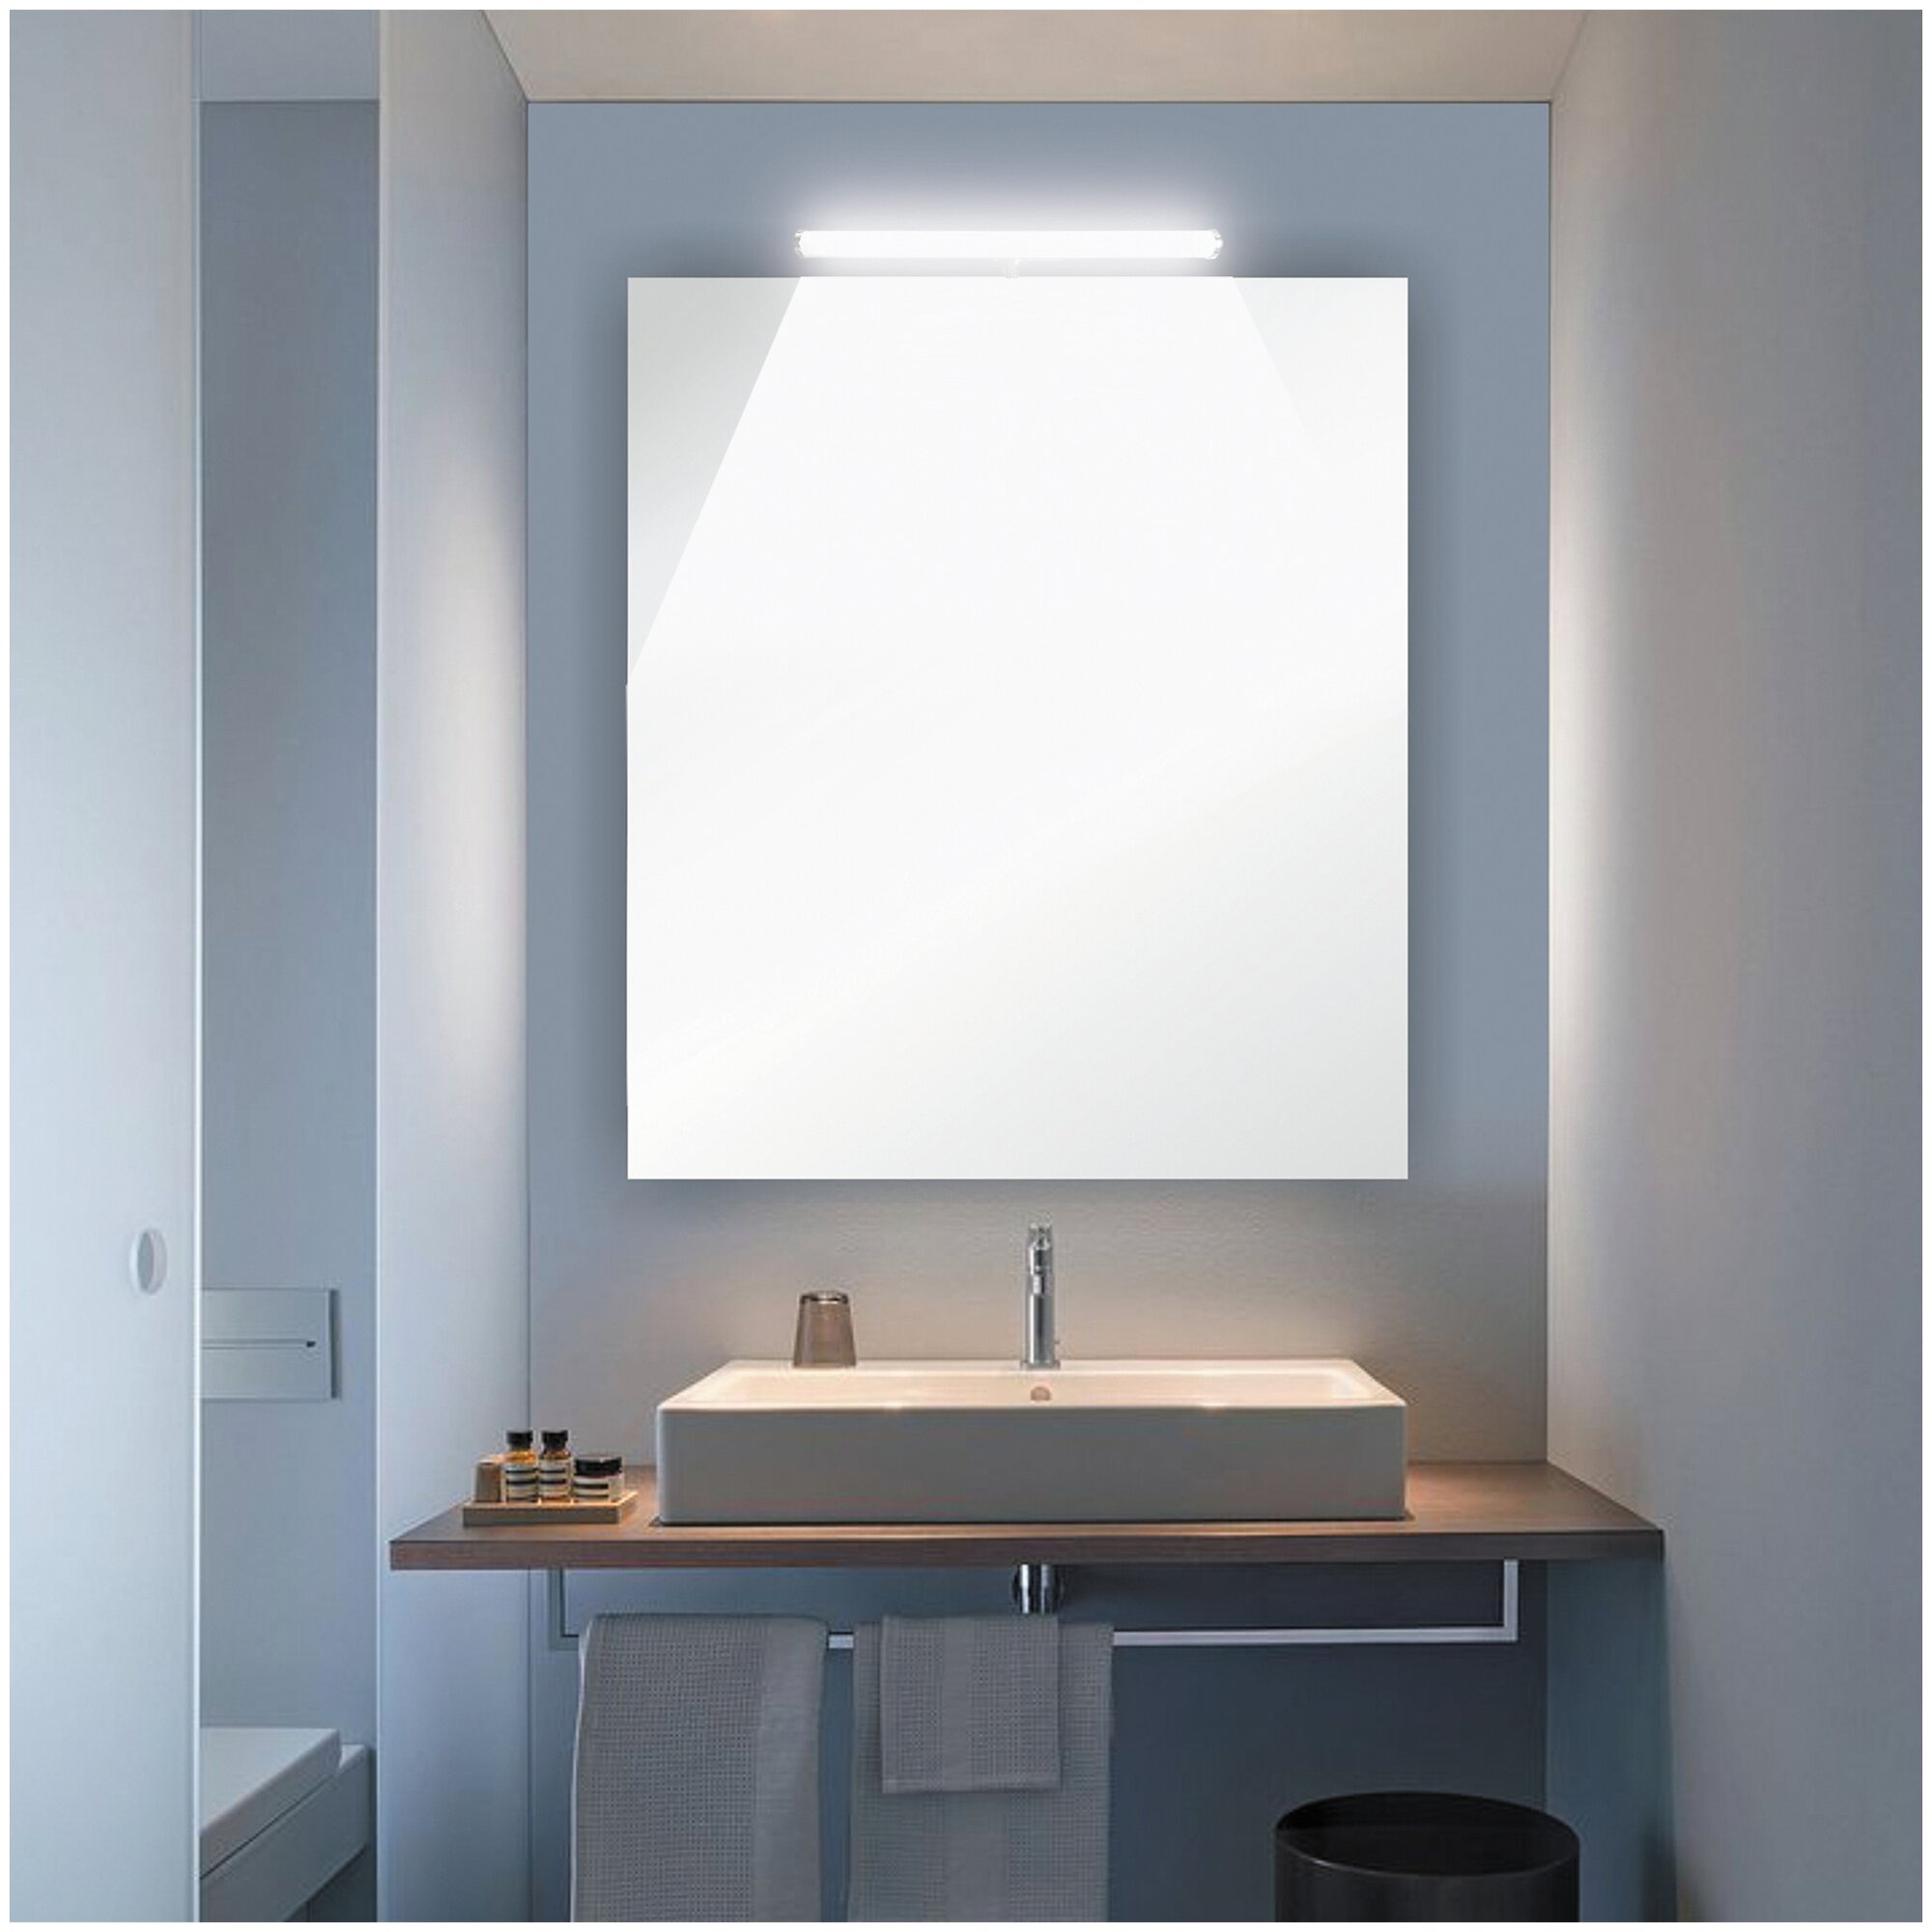 Декоративный светильник для подсветки зеркал или картин / Настенный светильник с хромированным корпусом / Дополнительное освещение для ванной комнаты с дневным цветом свечения 4000К / 540Лм / SMD 2835 - фотография № 3